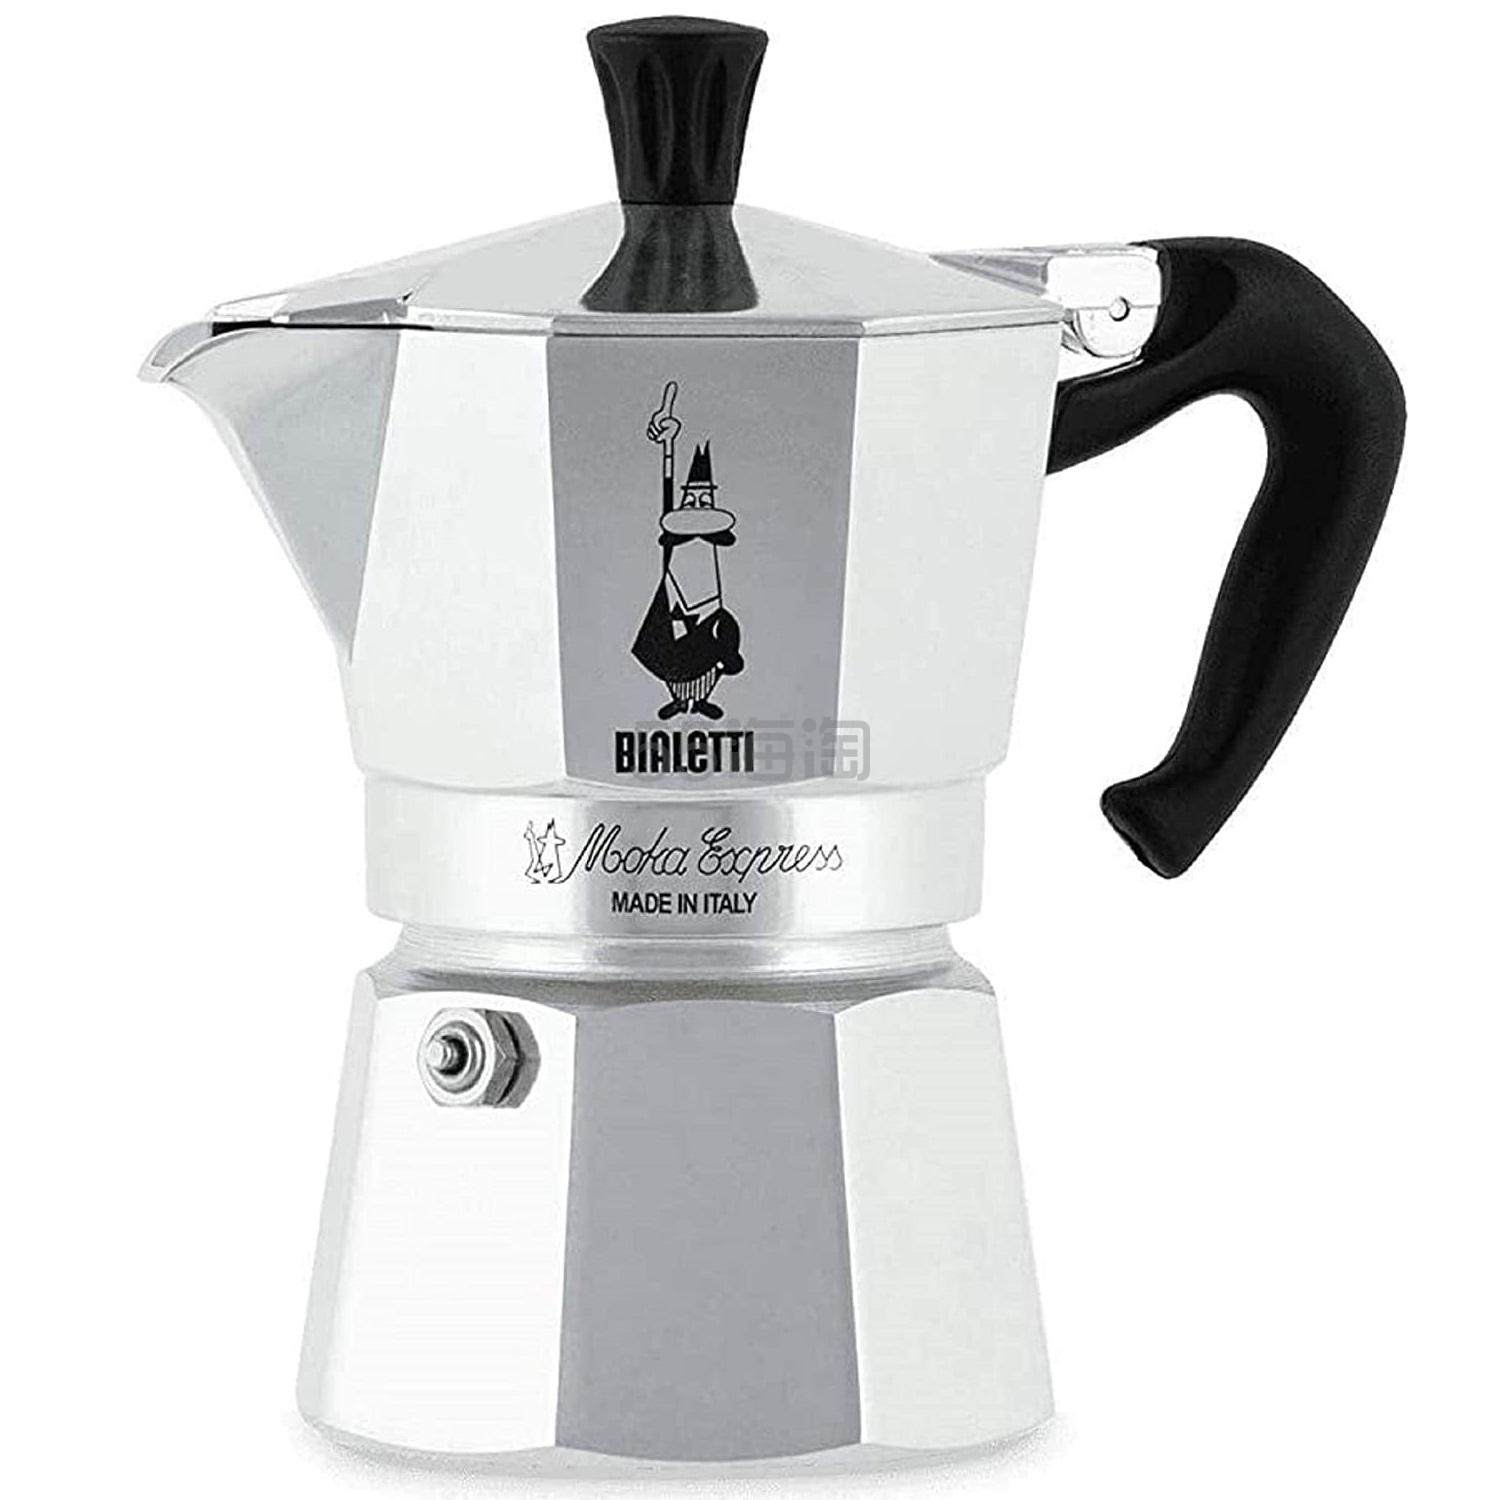 【亚马逊海外购】Bialetti 炉灶面浓咖啡机 银色 4杯容量